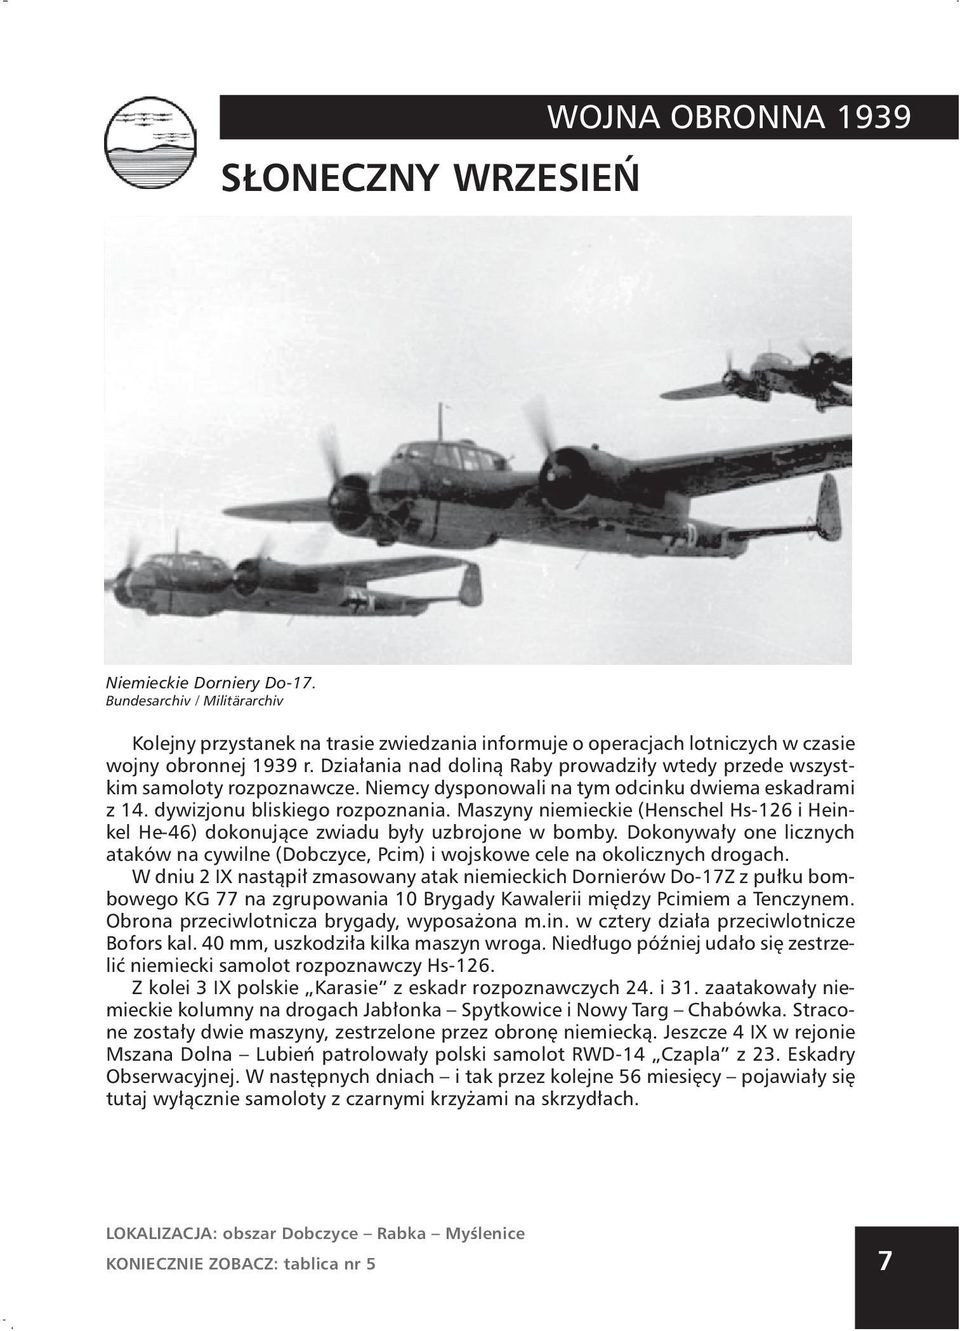 Maszyny niemieckie (Henschel Hs-126 i Heinkel He-46) dokonujące zwiadu były uzbrojone w bomby. Dokonywały one licznych ataków na cywilne (Dobczyce, Pcim) i wojskowe cele na okolicznych drogach.